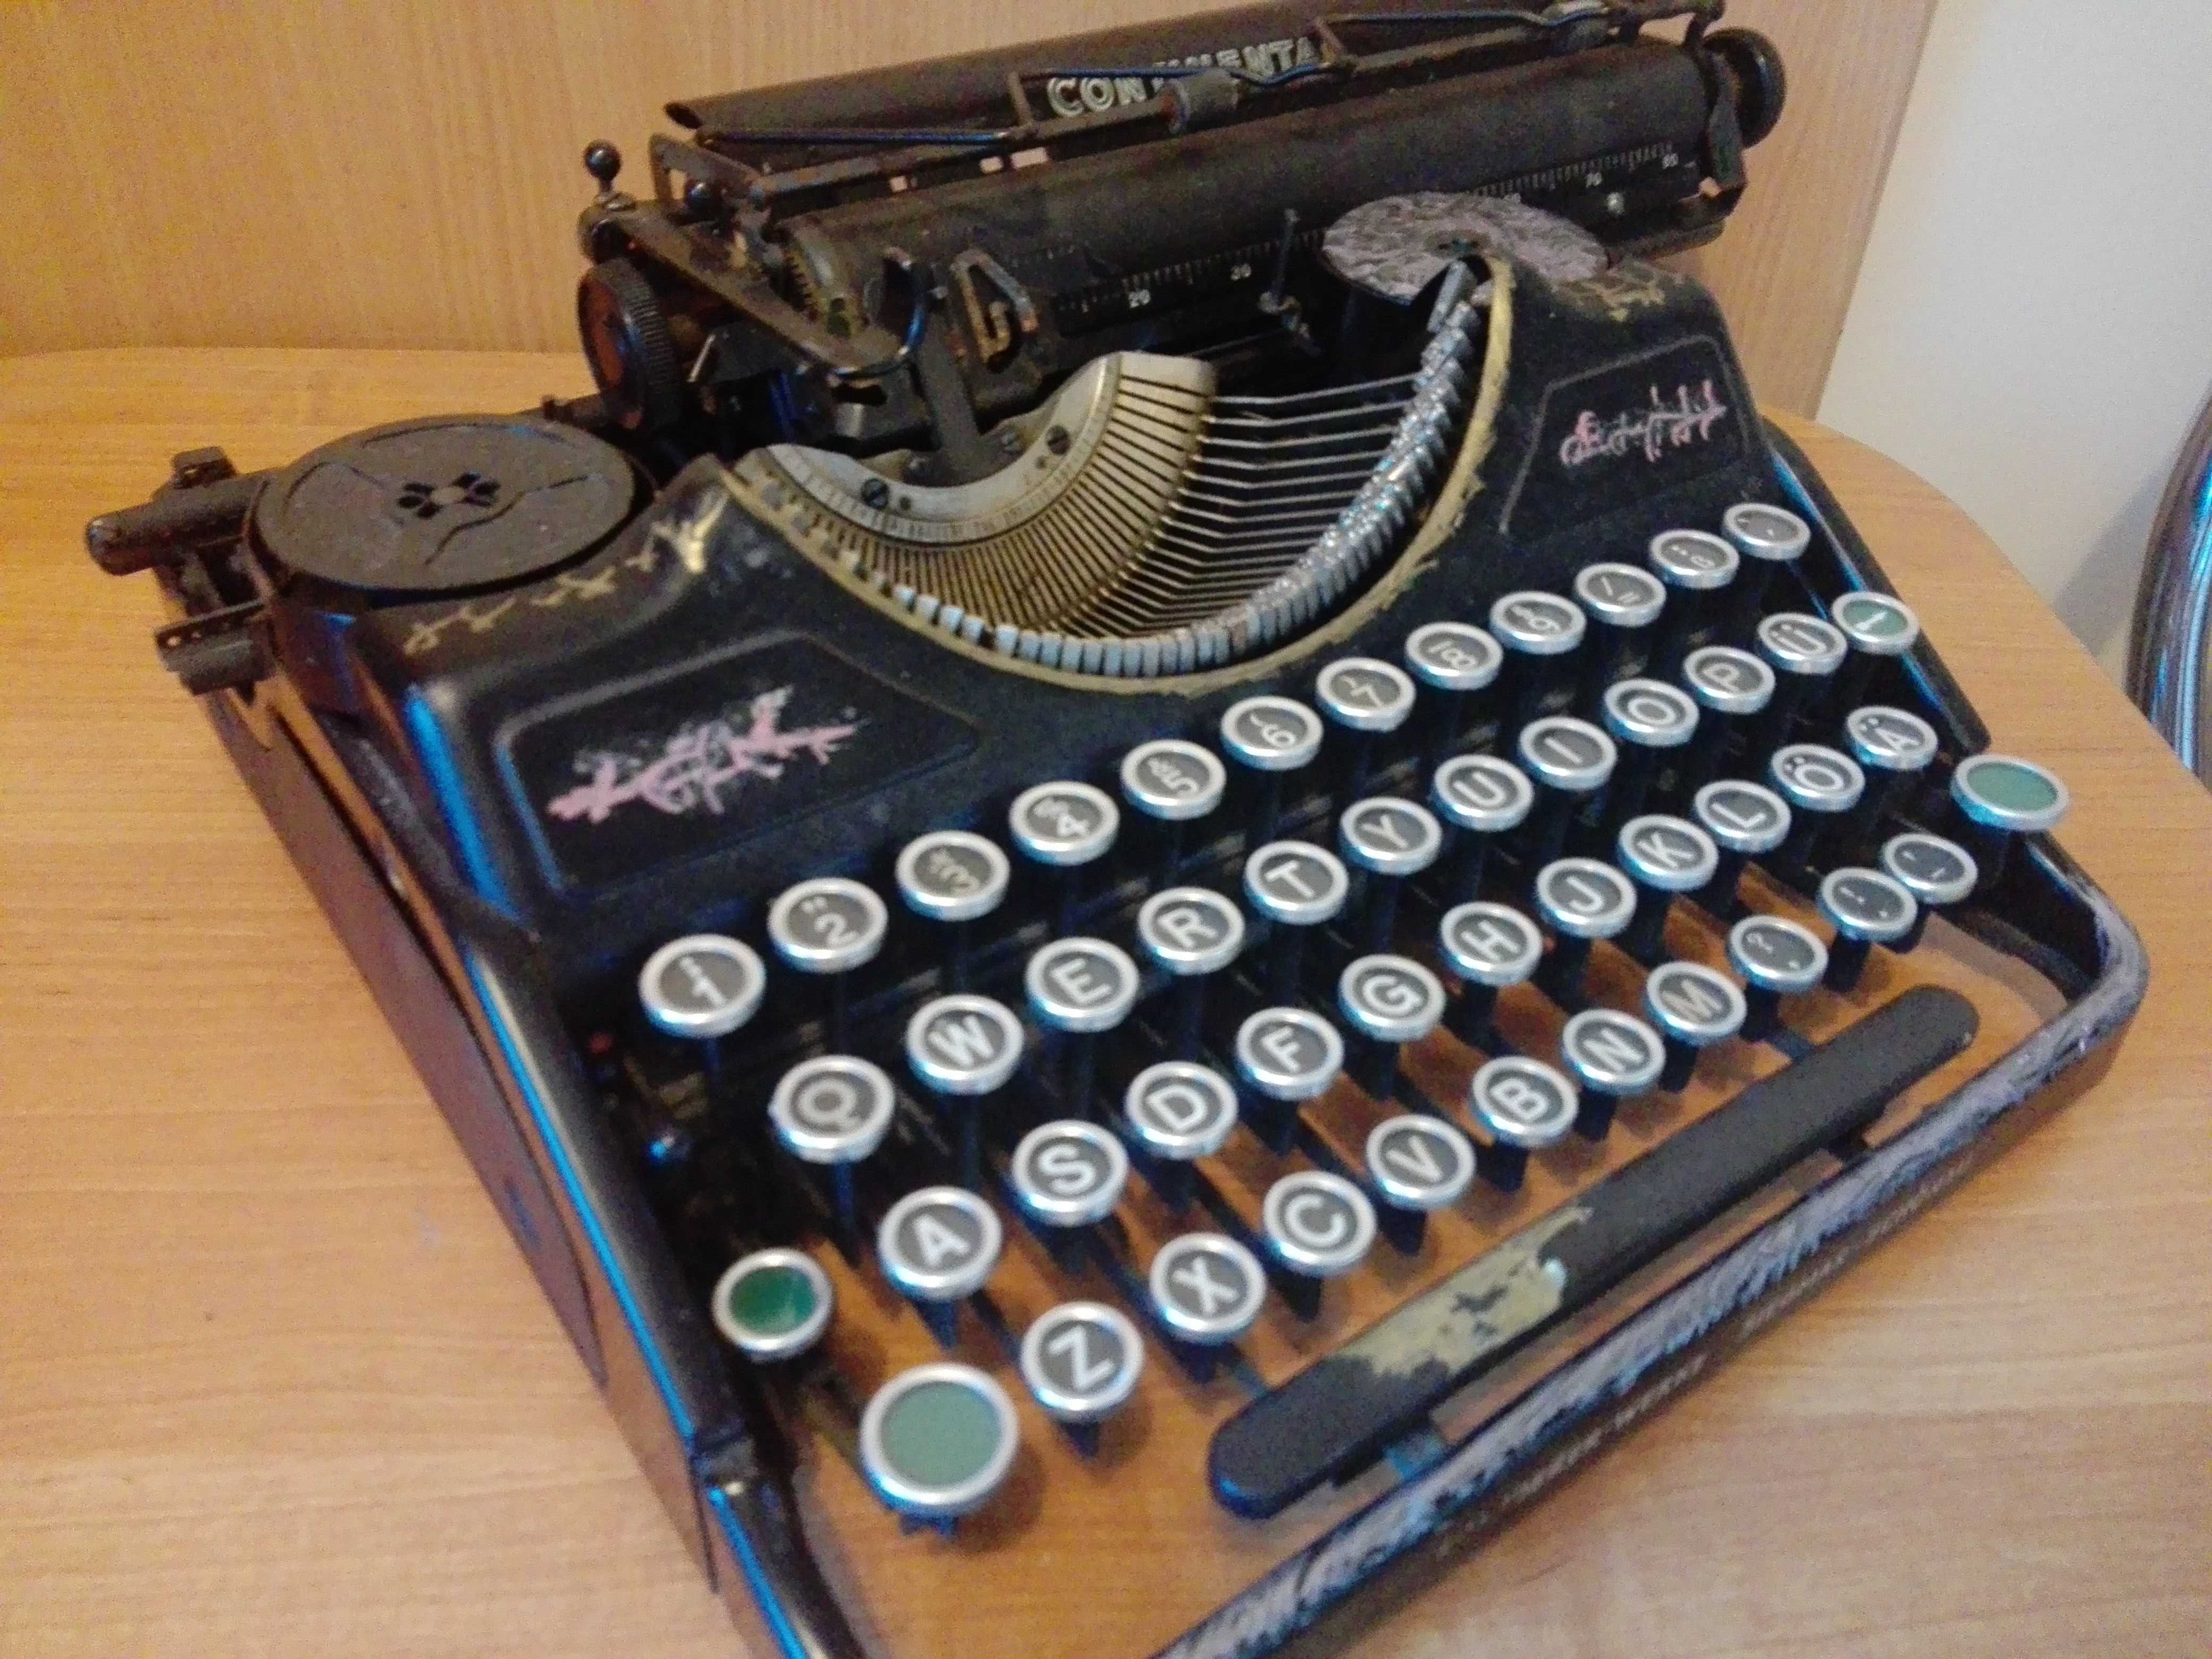 Maszyna do pisania Continental